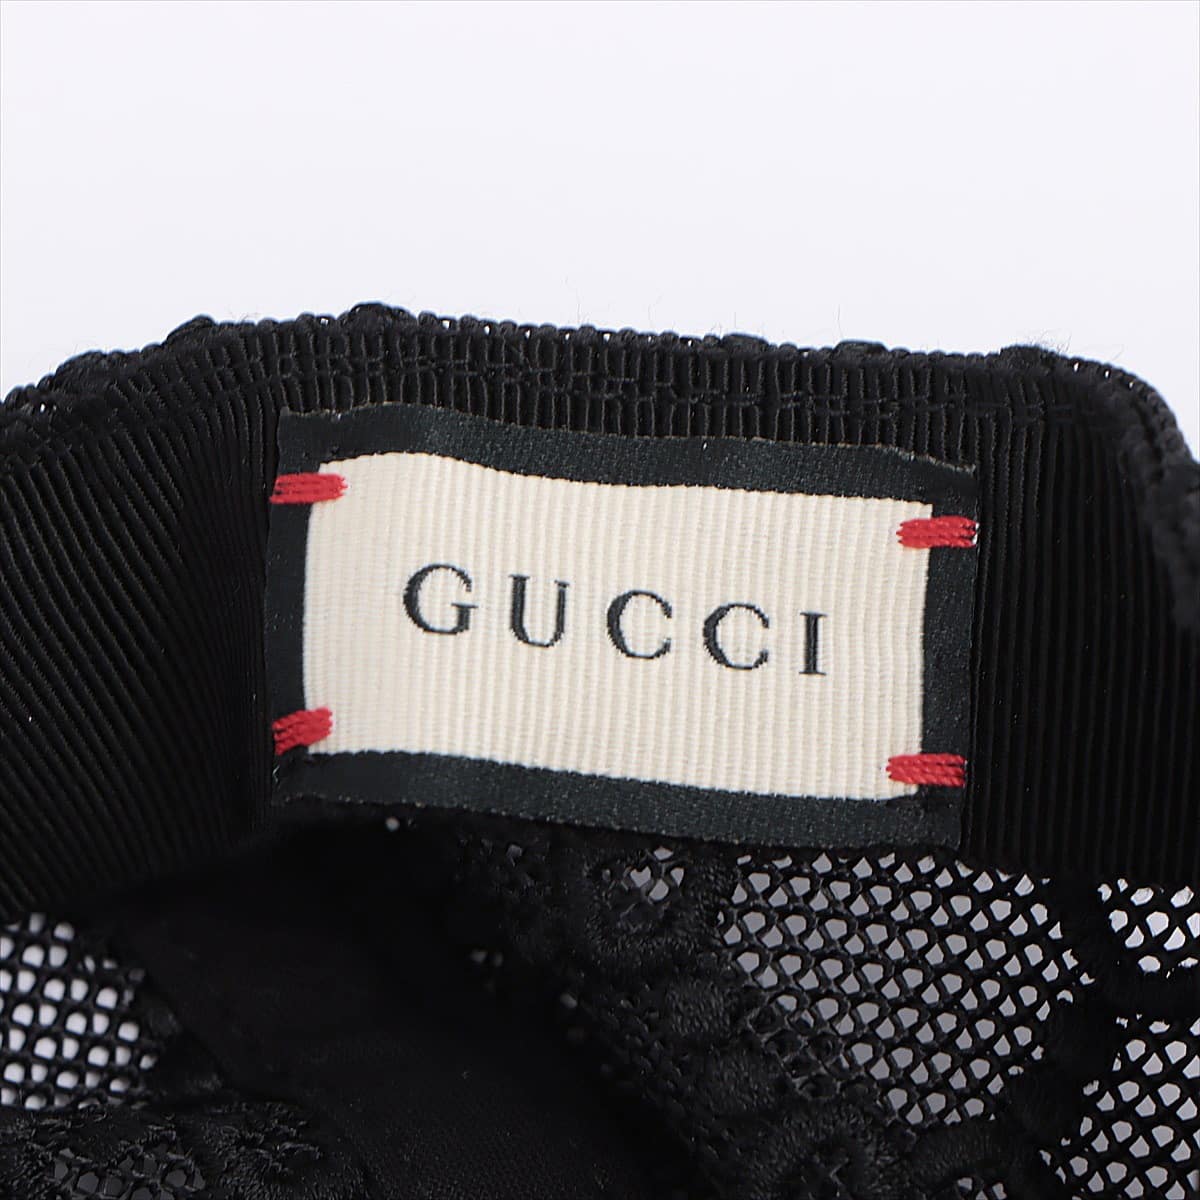 Gucci Embroidery Cap Cotton & nylon Black